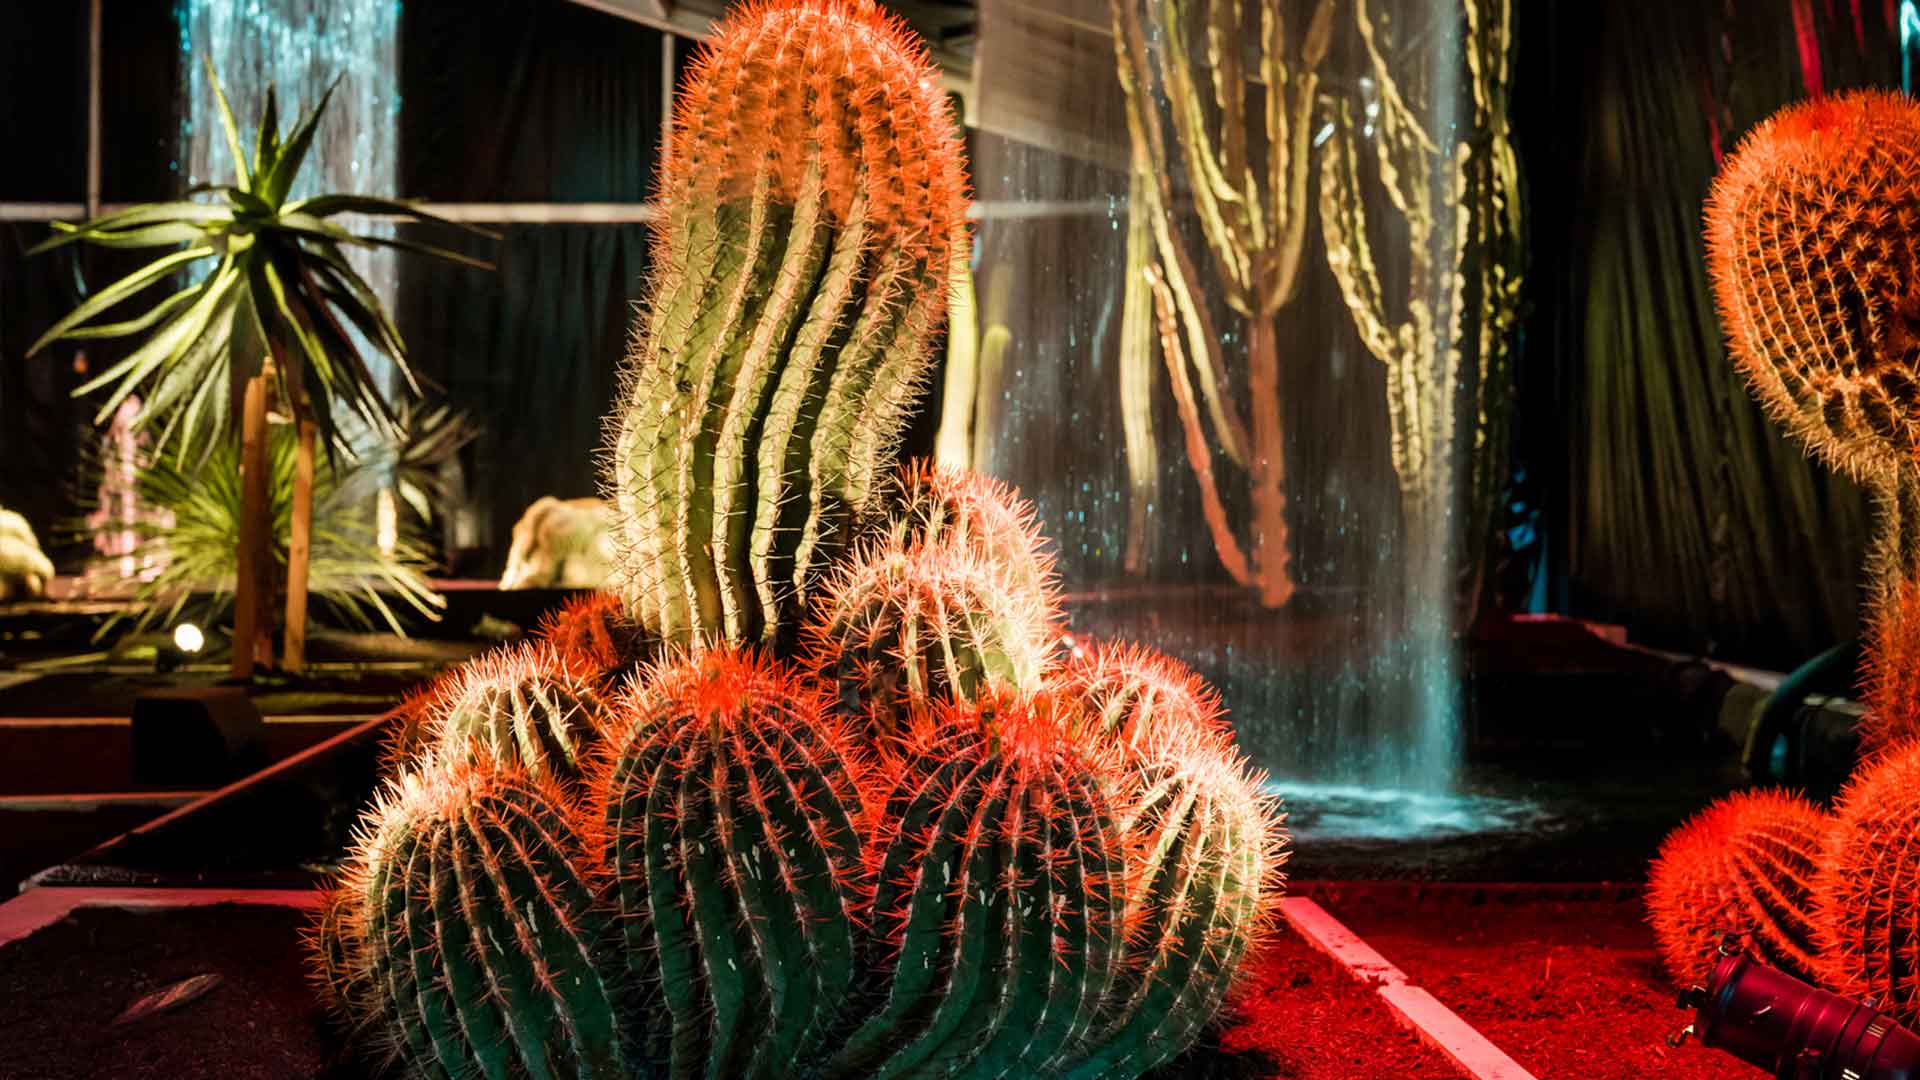 Folie Flore voyage au pays des jardins - jeux de lumières sur cactus